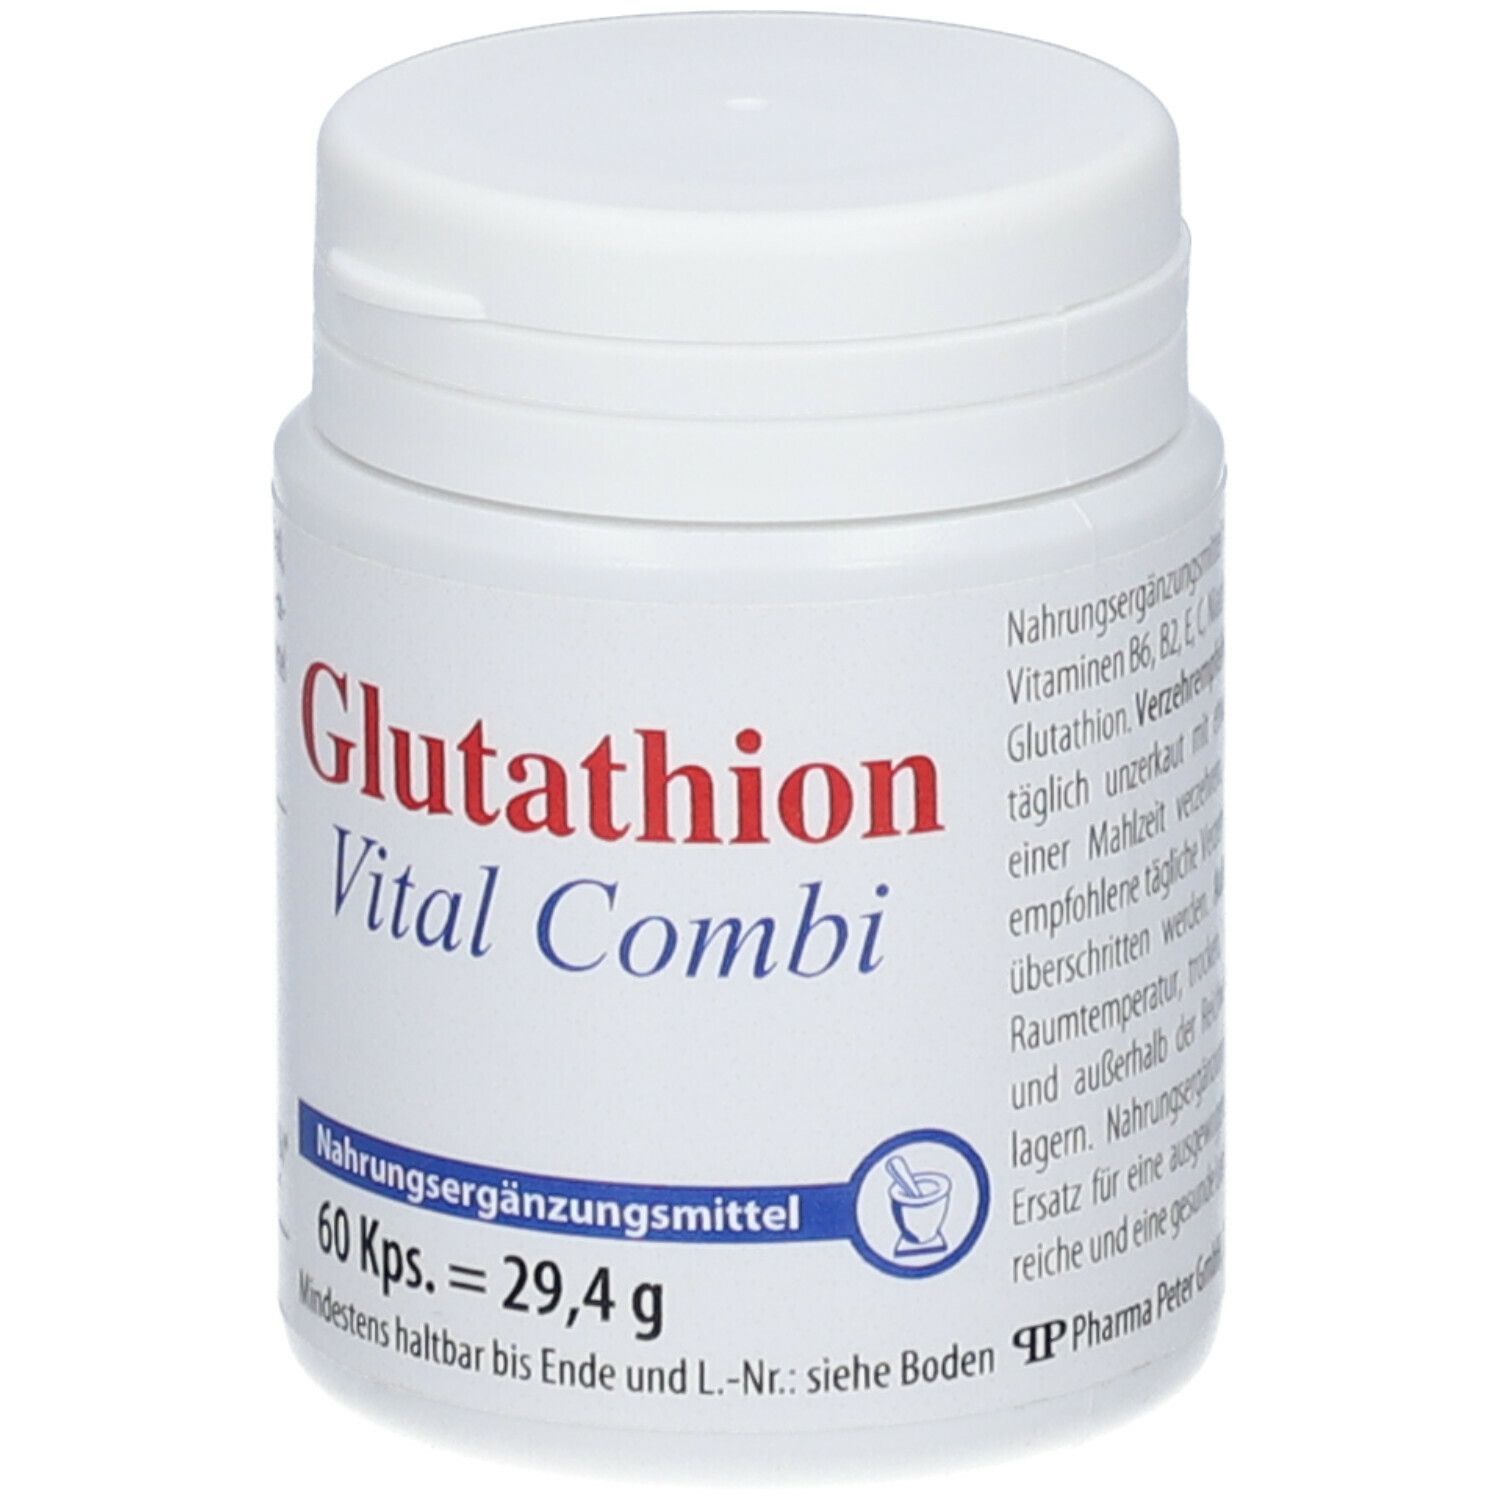 Glutathion Vital Combi